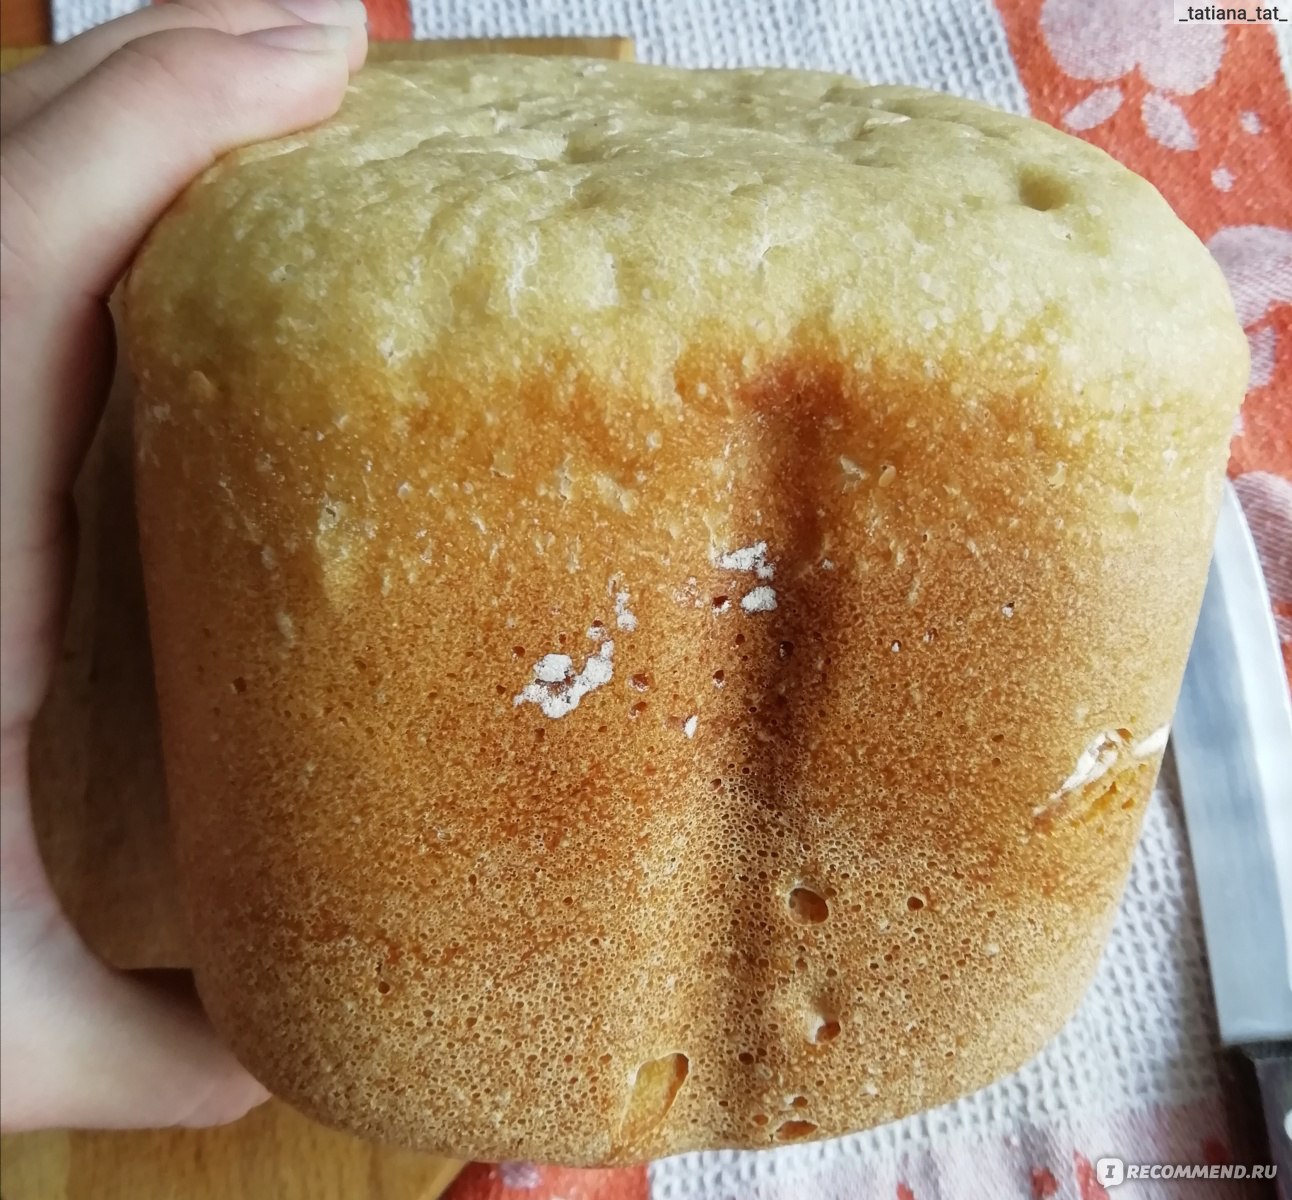 Кекс в хлебопечке горение. Хлебопечь Gorenje bm910wii - месильная лопасть. Хлеб в хлебопечке горение. Хлебопечь 910 горение. Рецепт хлеба в хлебопечке Gorenje bm910wii.